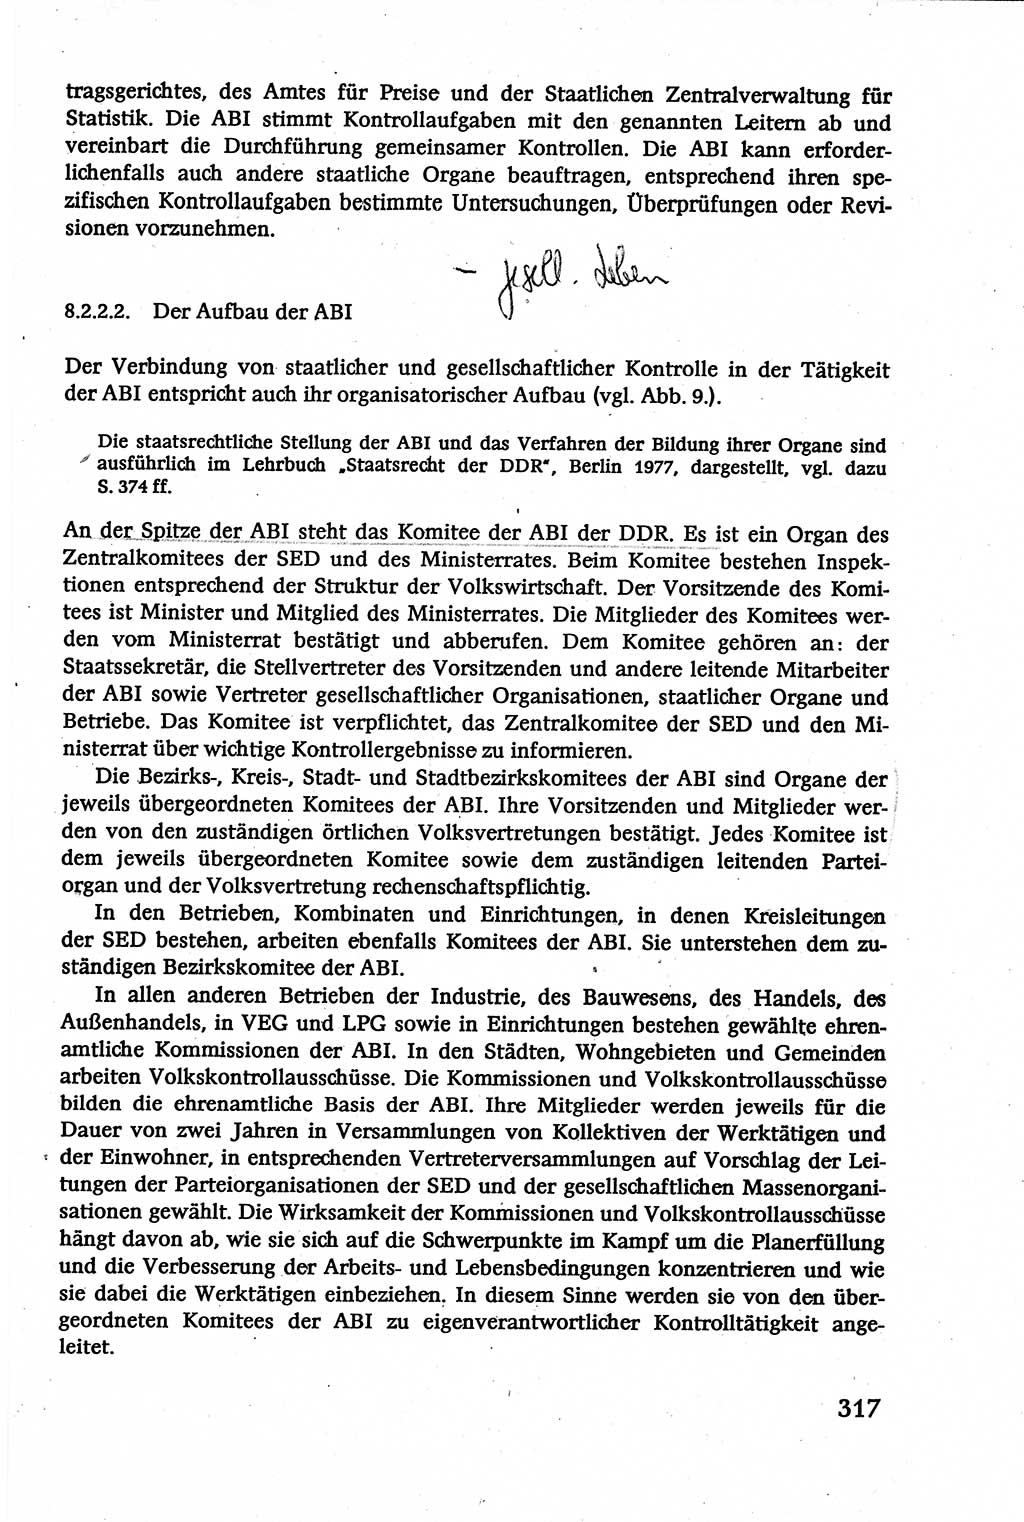 Verwaltungsrecht [Deutsche Demokratische Republik (DDR)], Lehrbuch 1979, Seite 317 (Verw.-R. DDR Lb. 1979, S. 317)